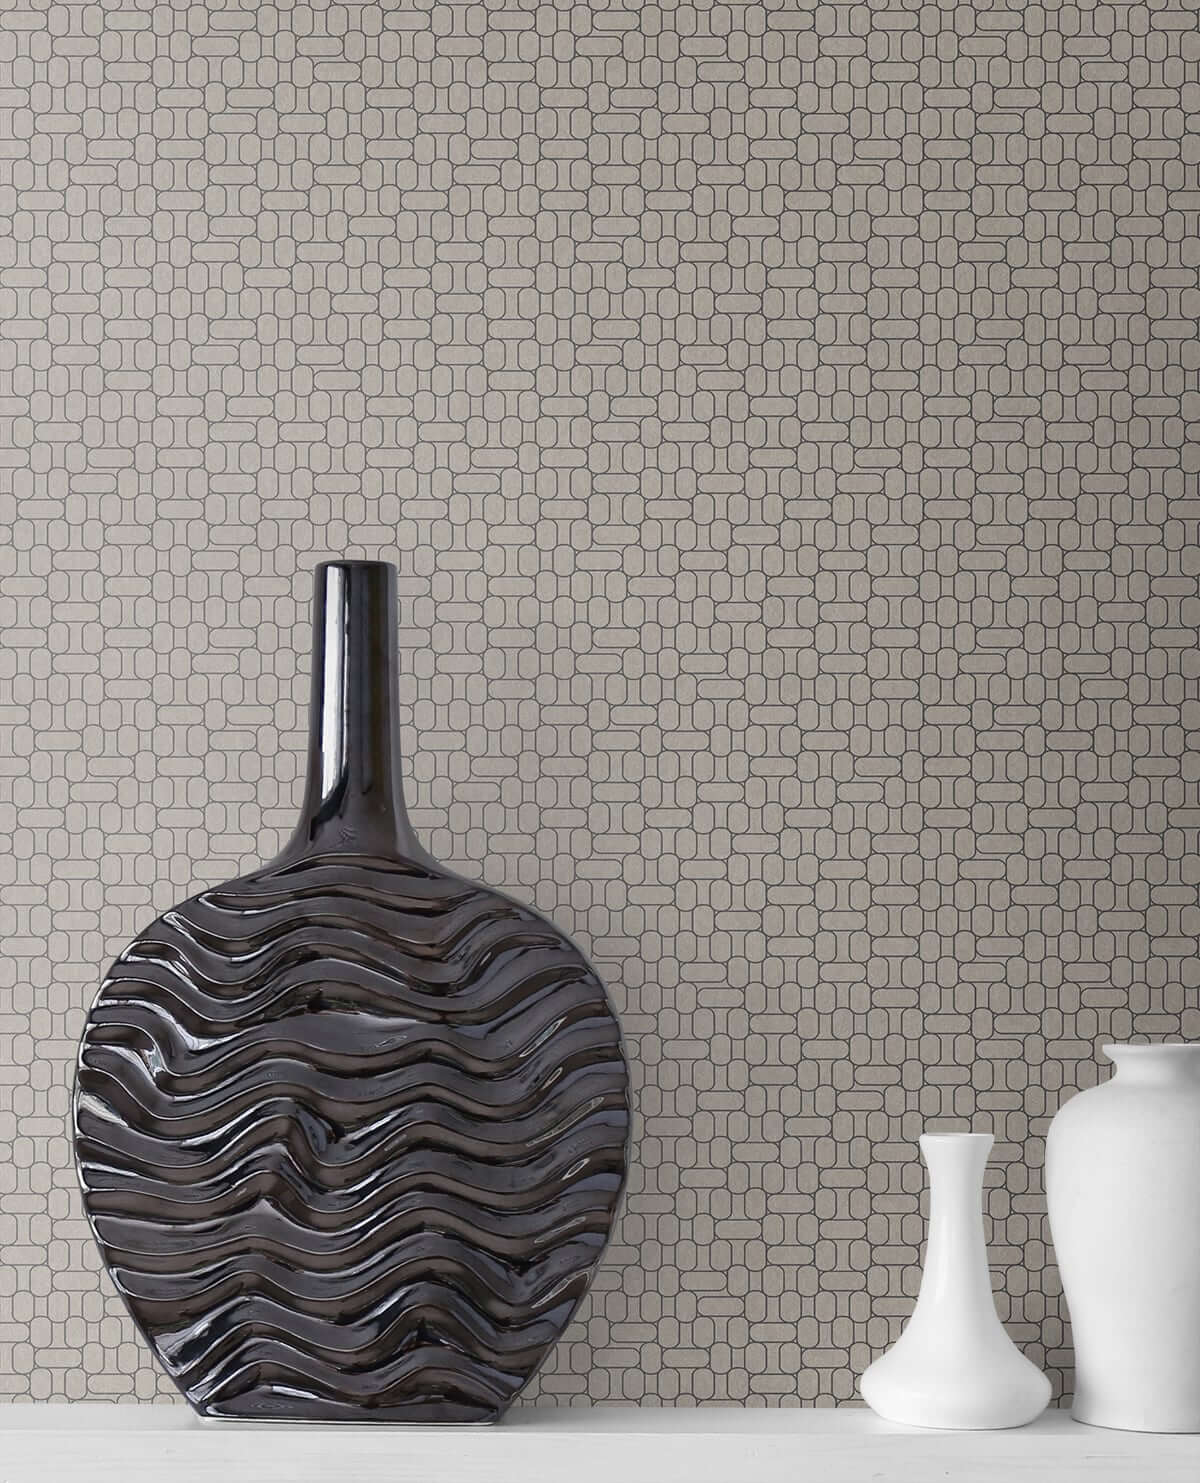 Mondrian Capsule Geometric Wallpaper - Nobel Grey